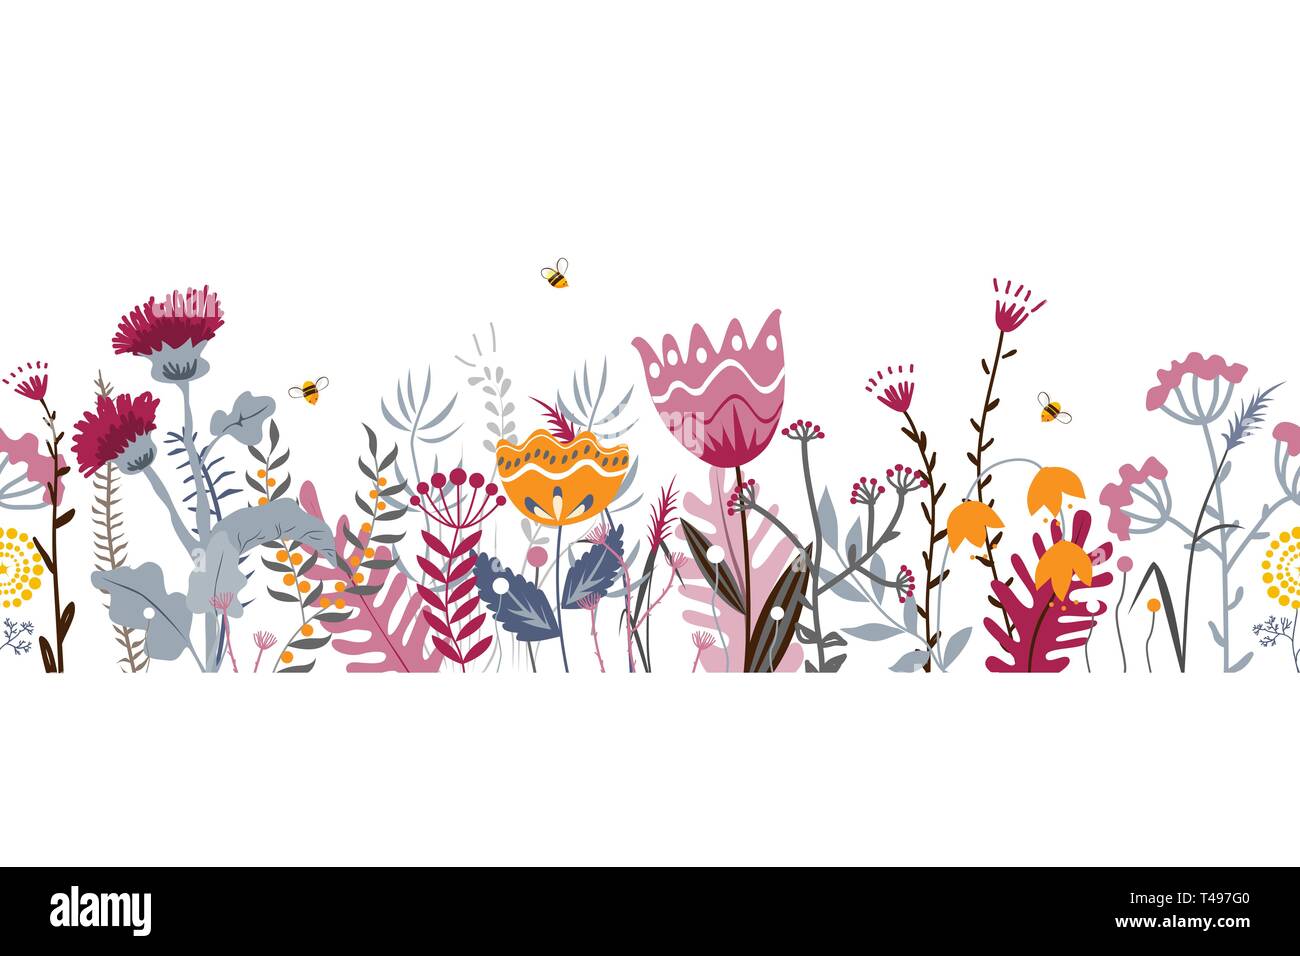 Naturaleza vectorial de fondo sin fisuras dibujadas a mano con hierbas silvestres, flores y hojas en blanco. Doodle estilo ilustración floral Ilustración del Vector